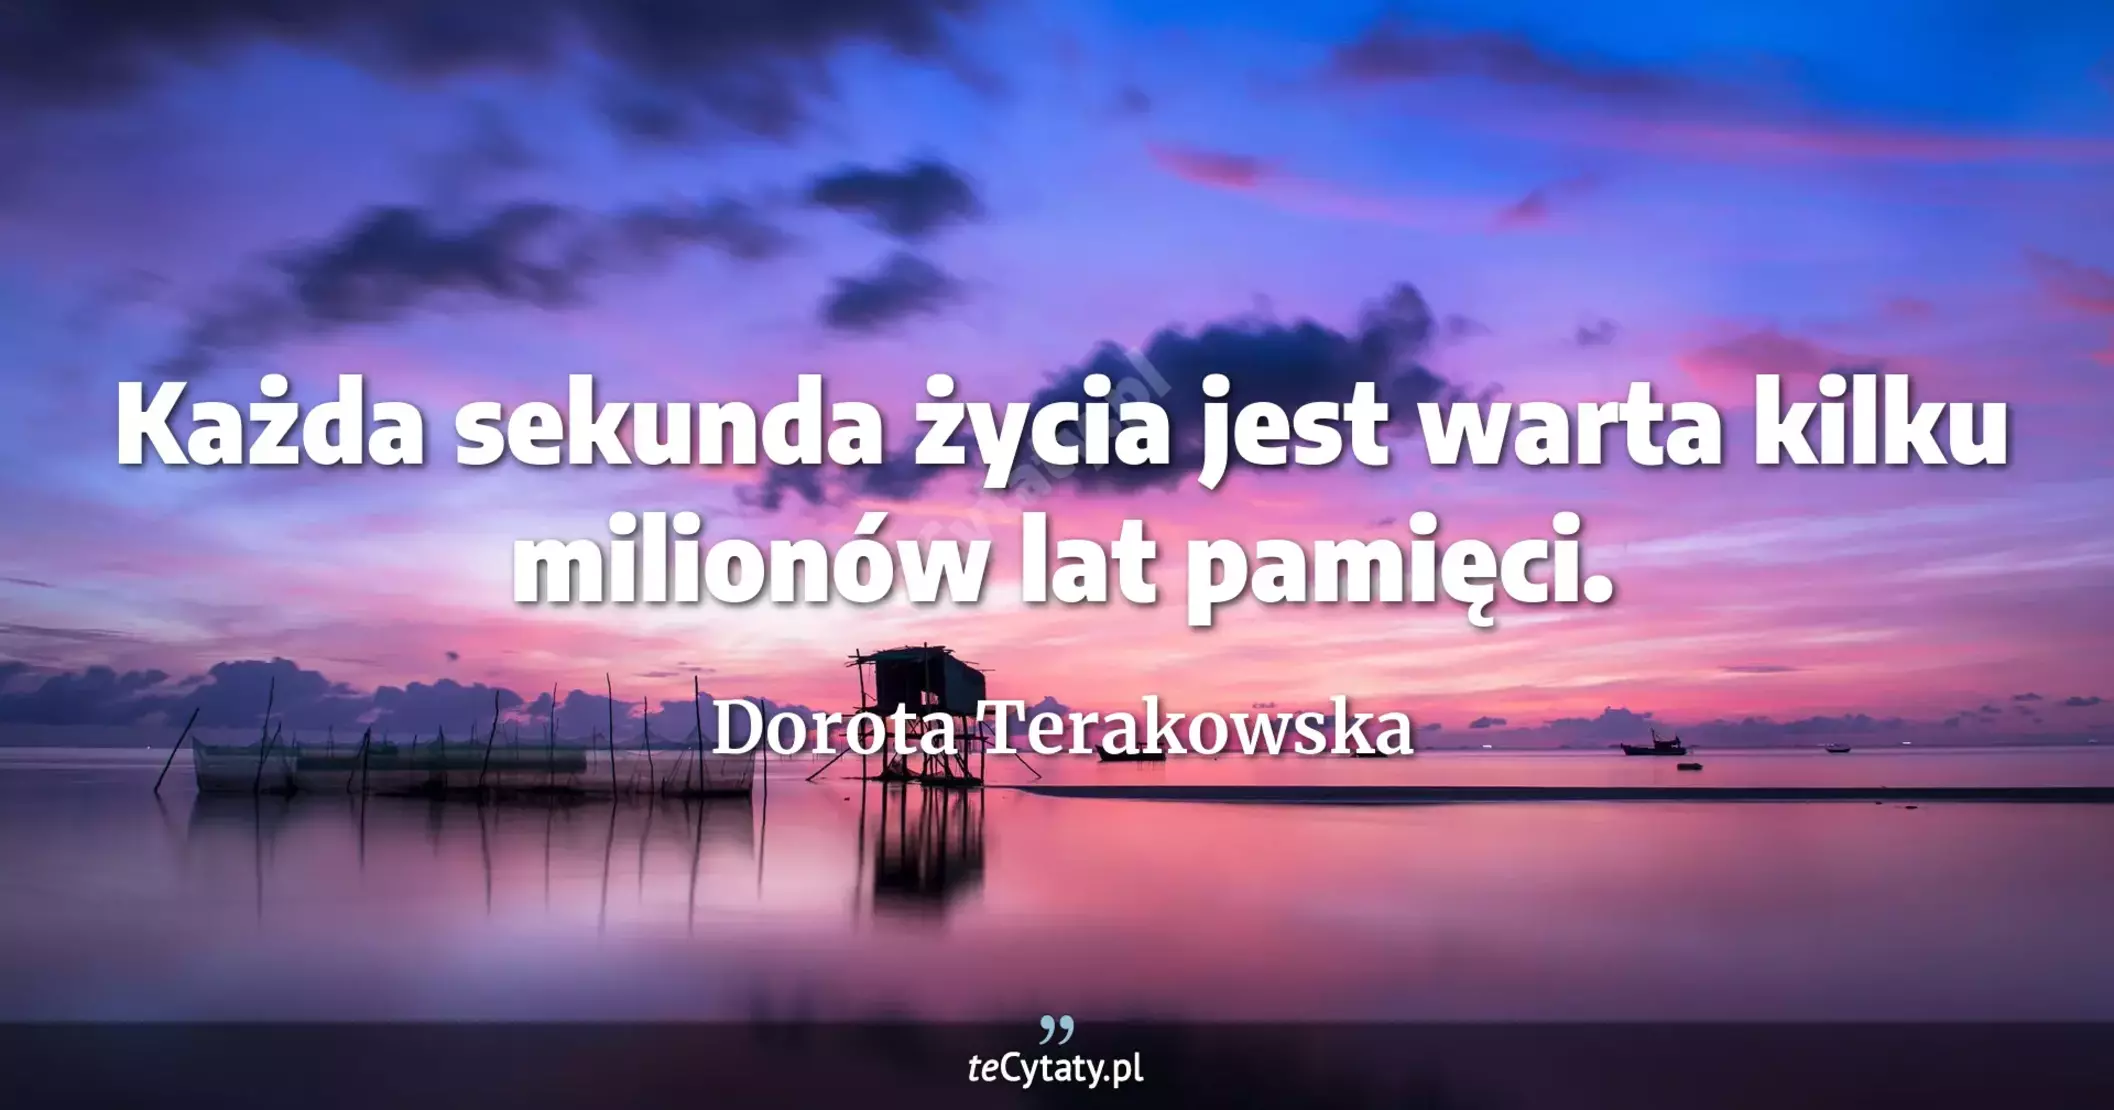 Każda sekunda życia jest warta kilku milionów lat pamięci. - Dorota Terakowska